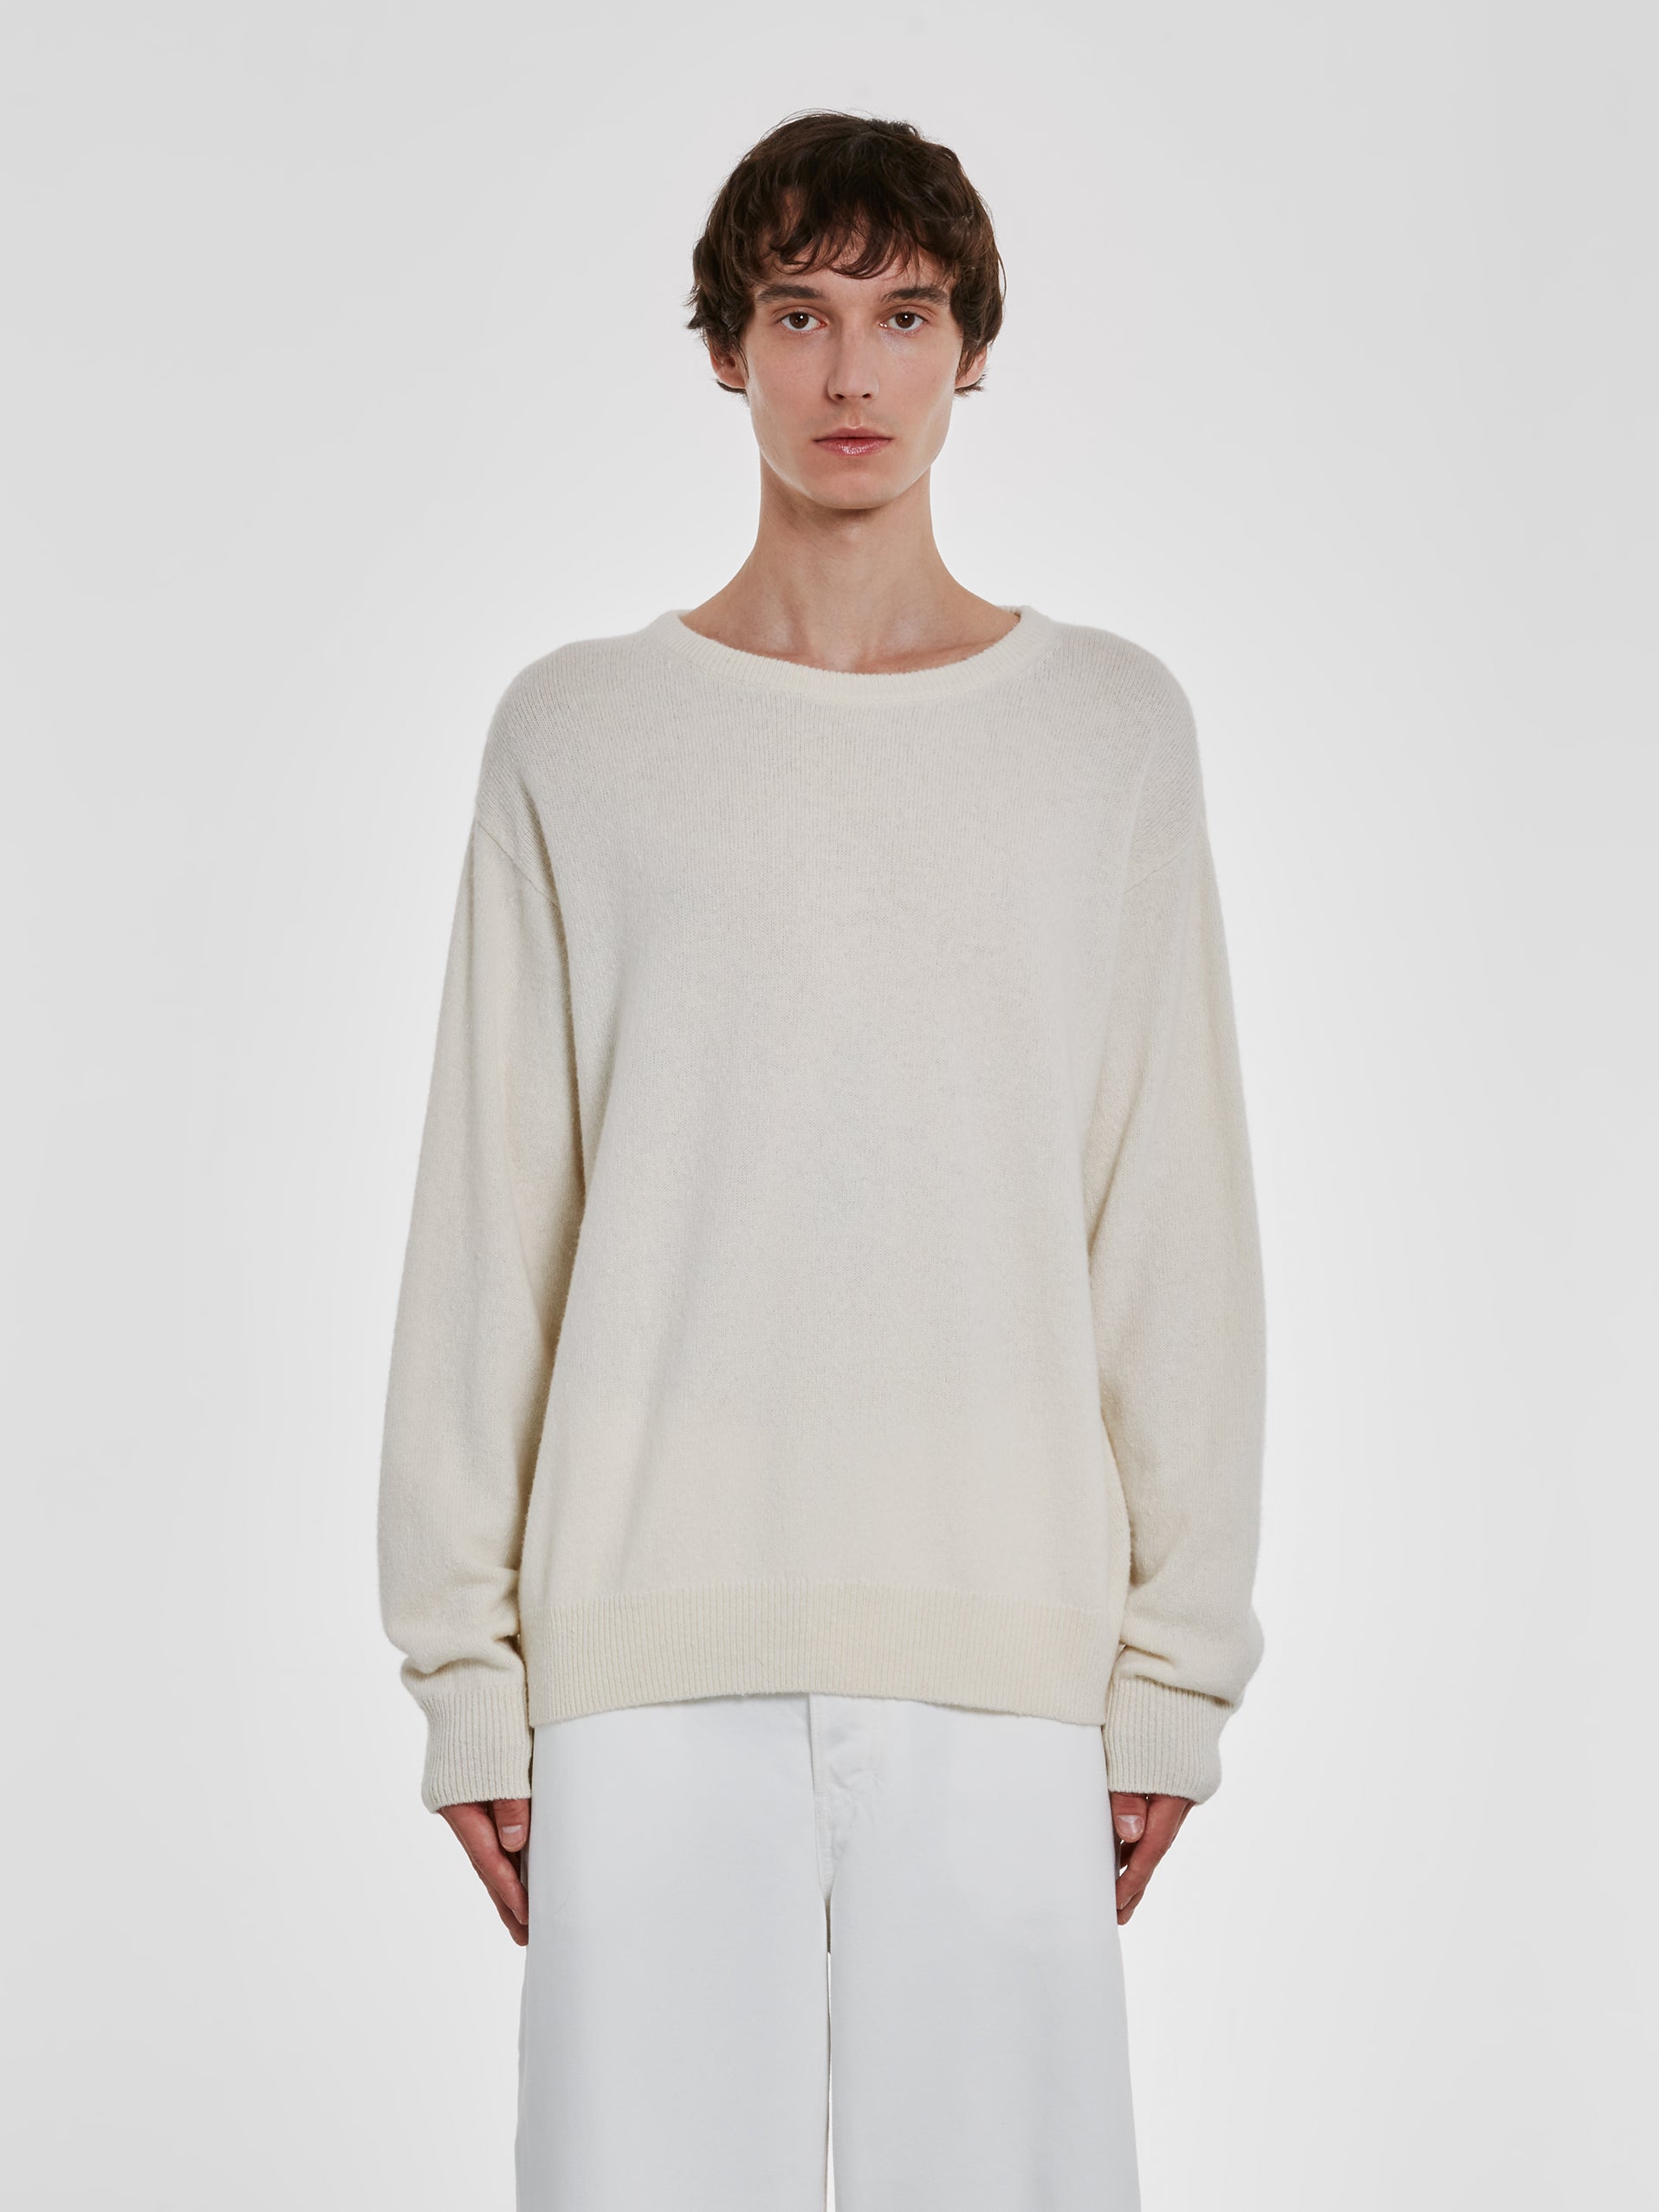 Dries Van Noten - Men’s Wool Sweater - (Ecru) view 1